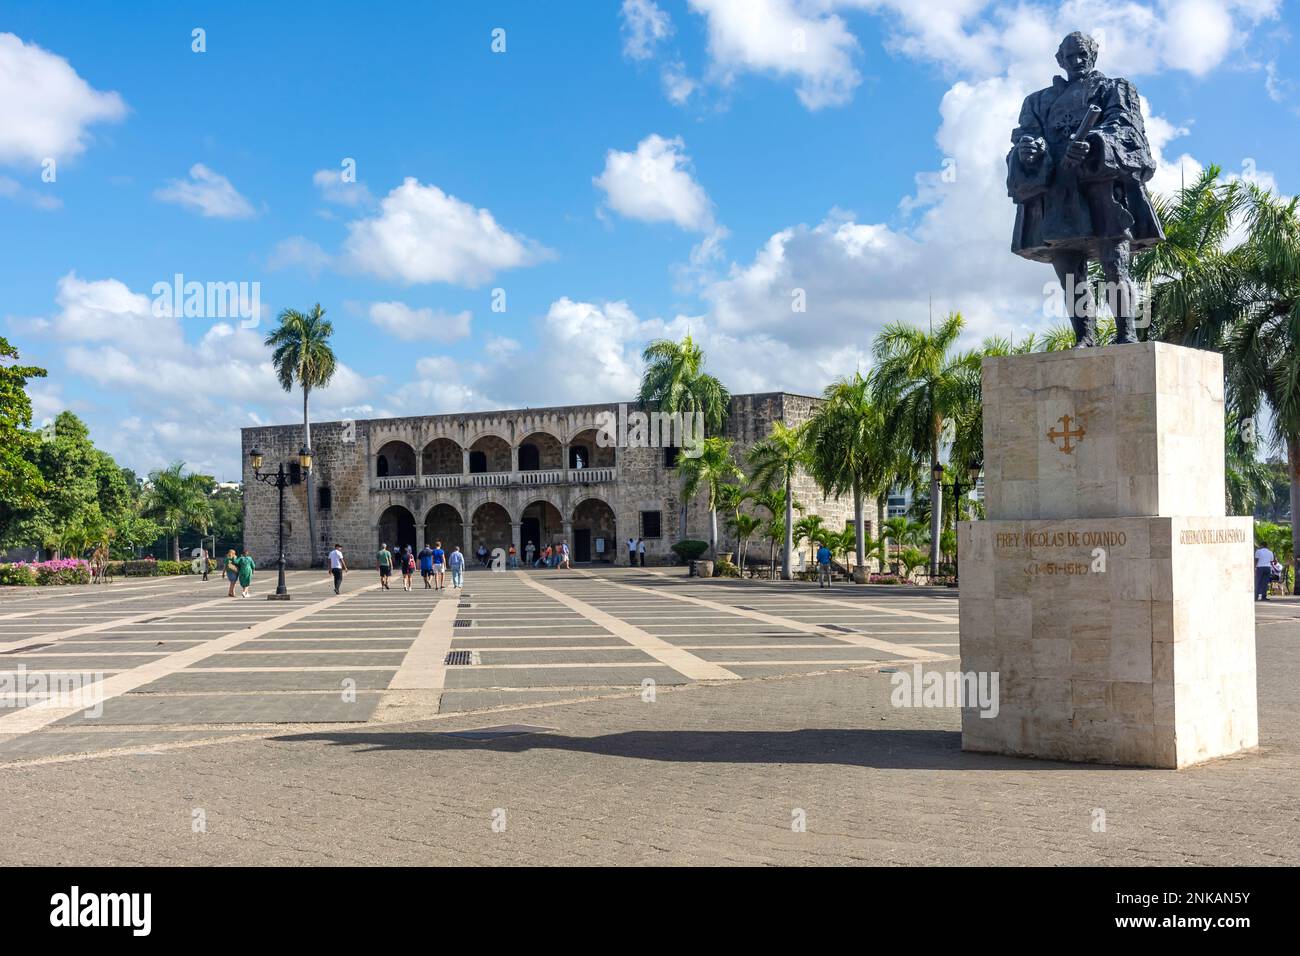 Alcázar de Colón, Plaza de la Espana de La Hispanidad, Santo Domingo, Dominikanische Republik (Republica Dominicana), Großantillen, Karibik Stockfoto